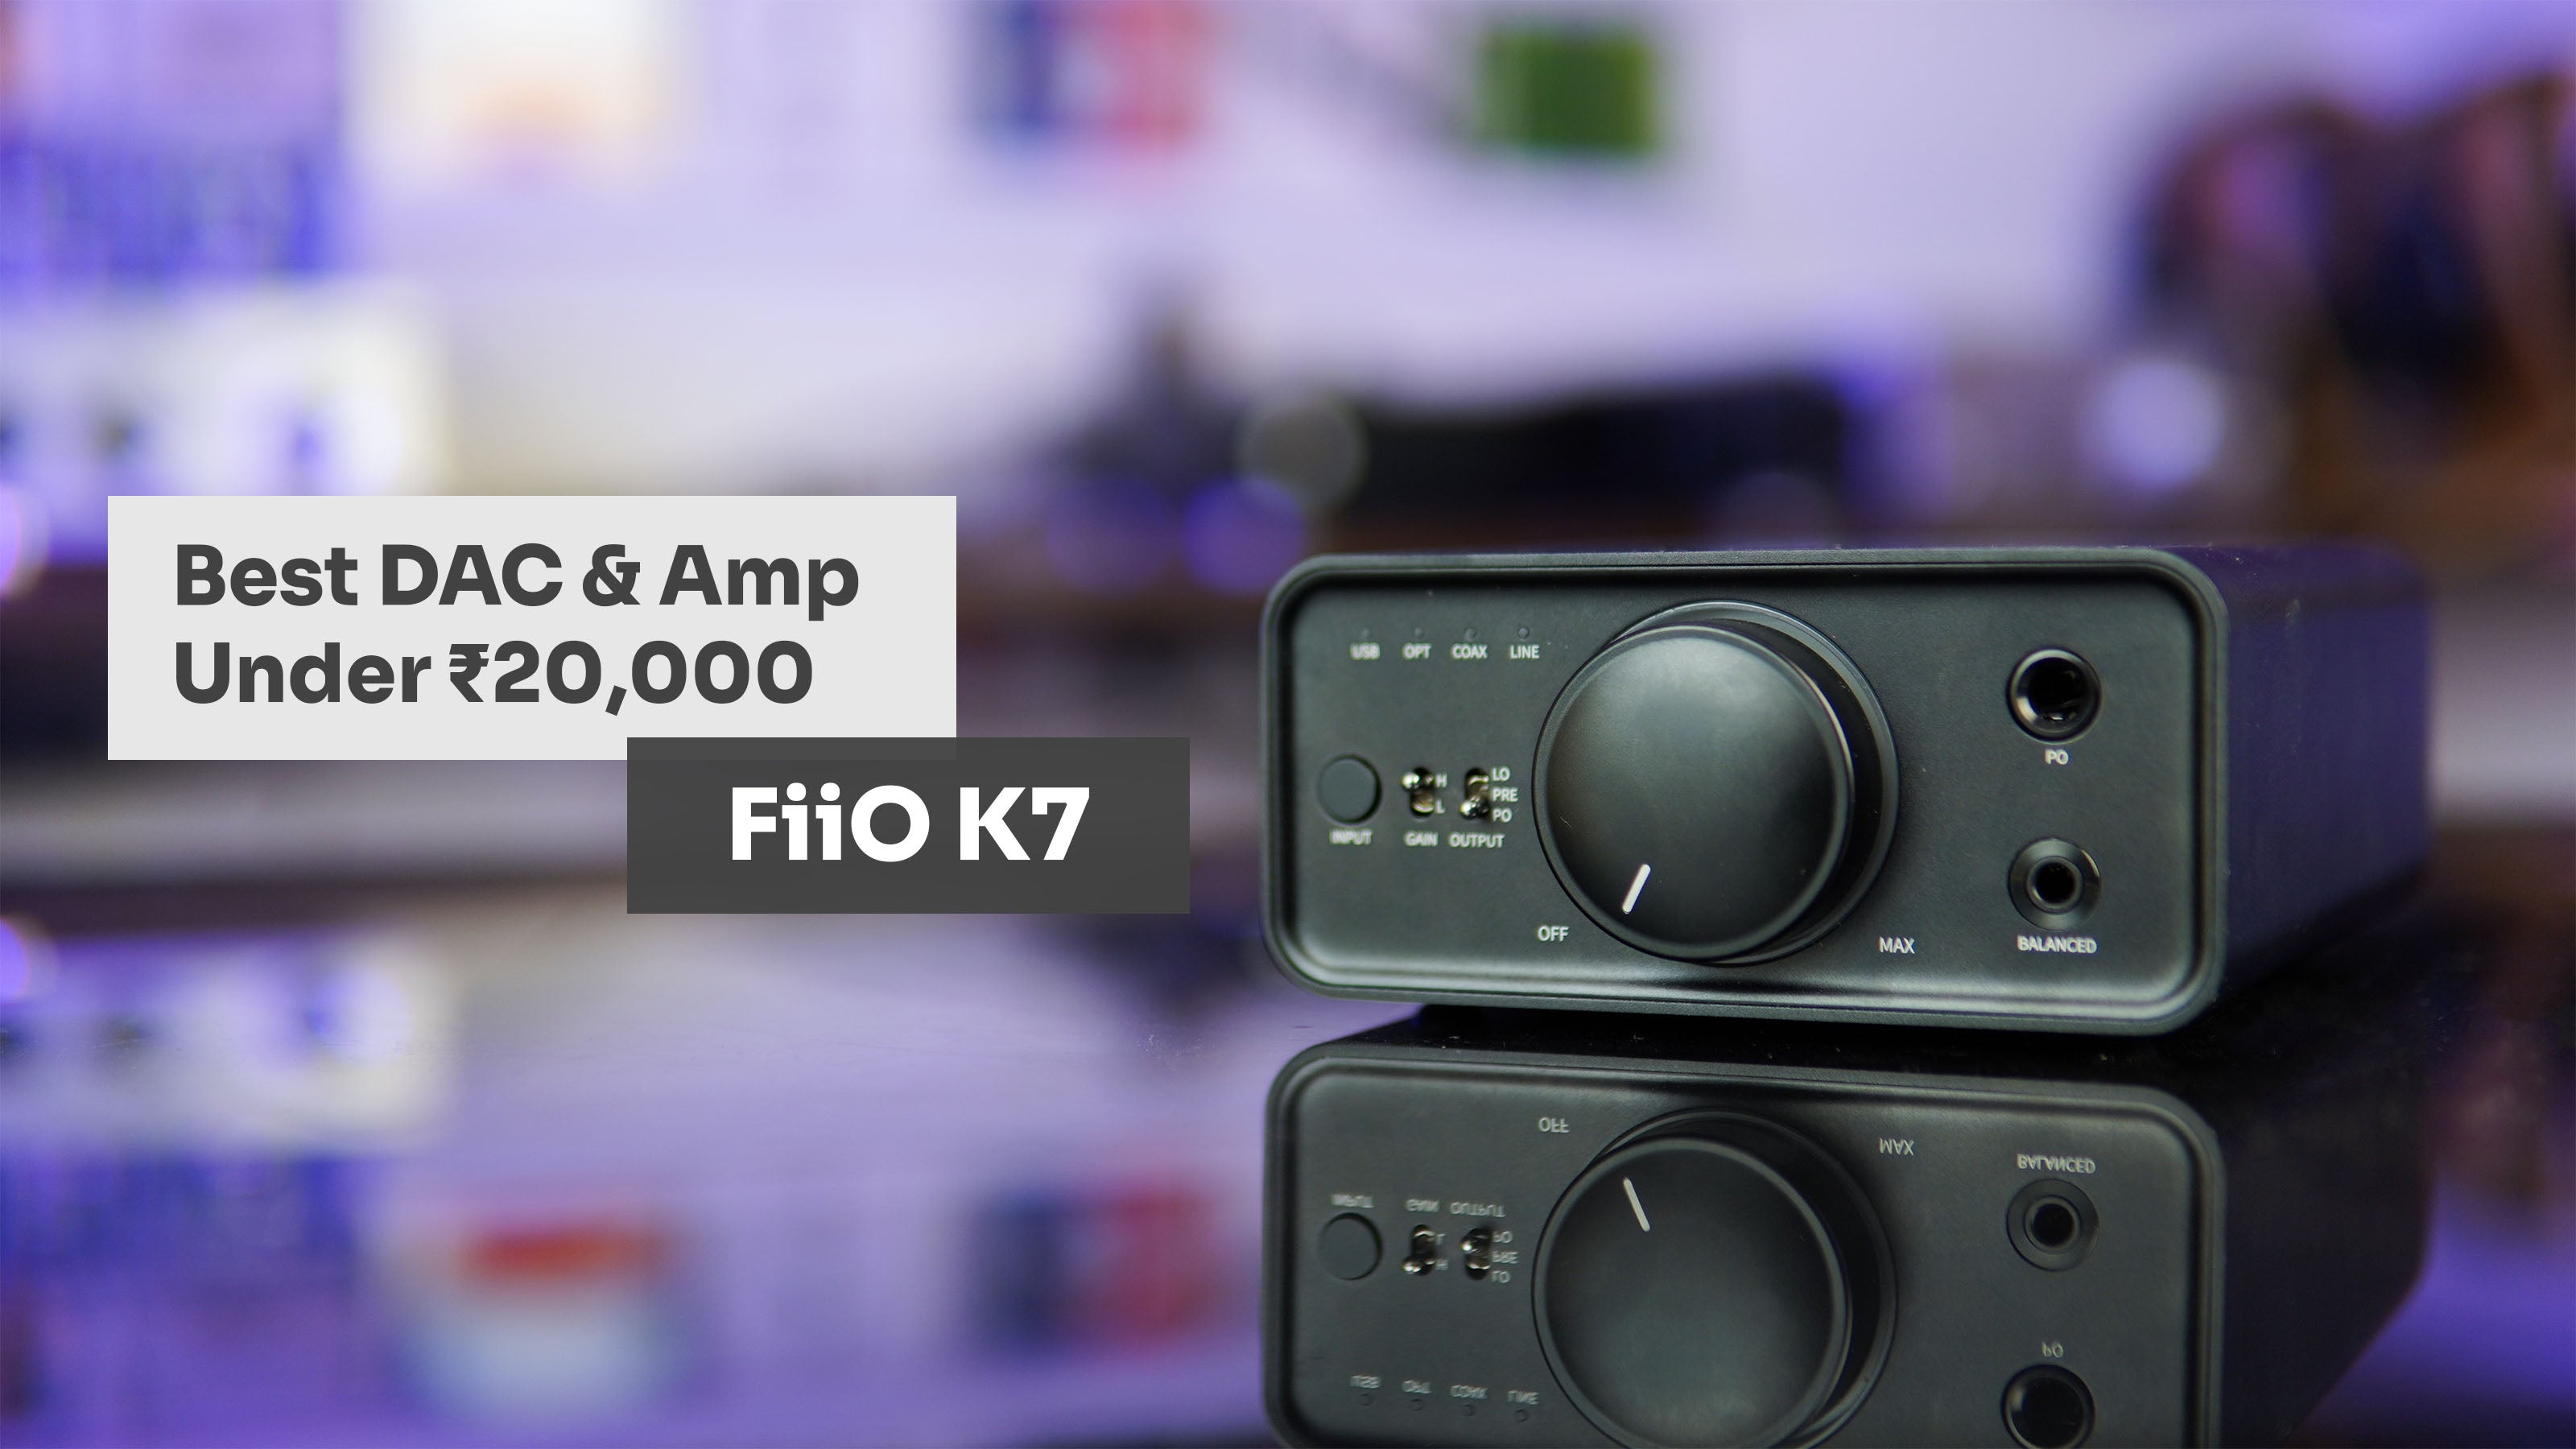 The Best DAC & Amp Under ₹20,000